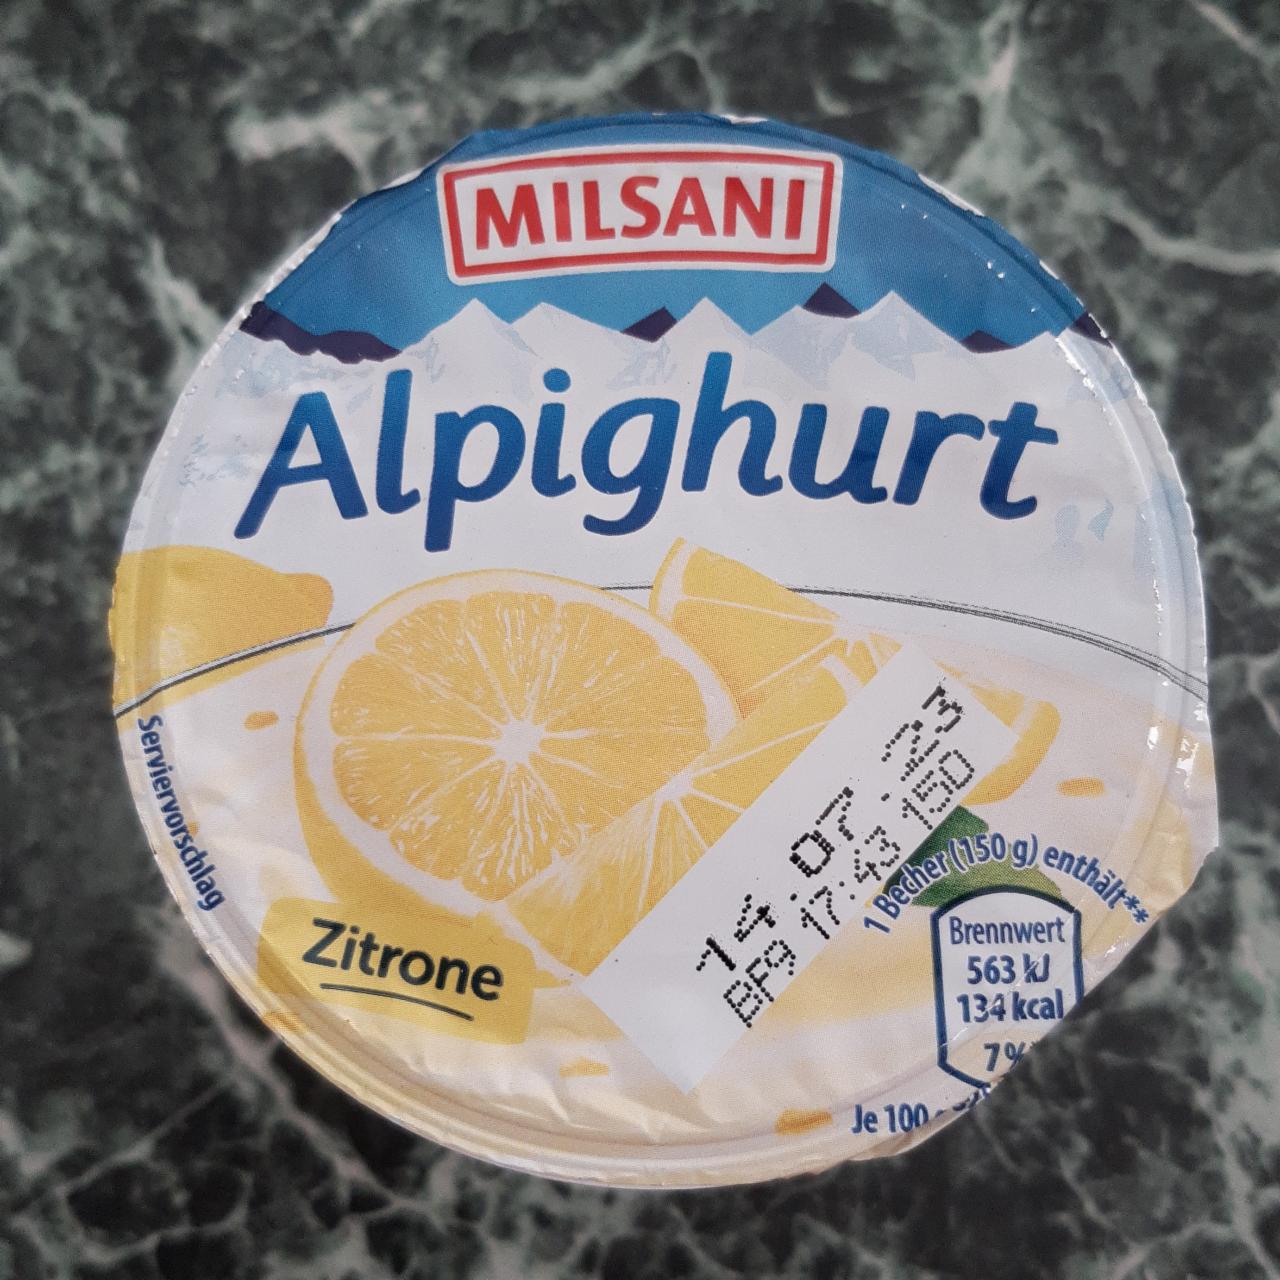 Fotografie - Alpighurt Zitrone Milsani